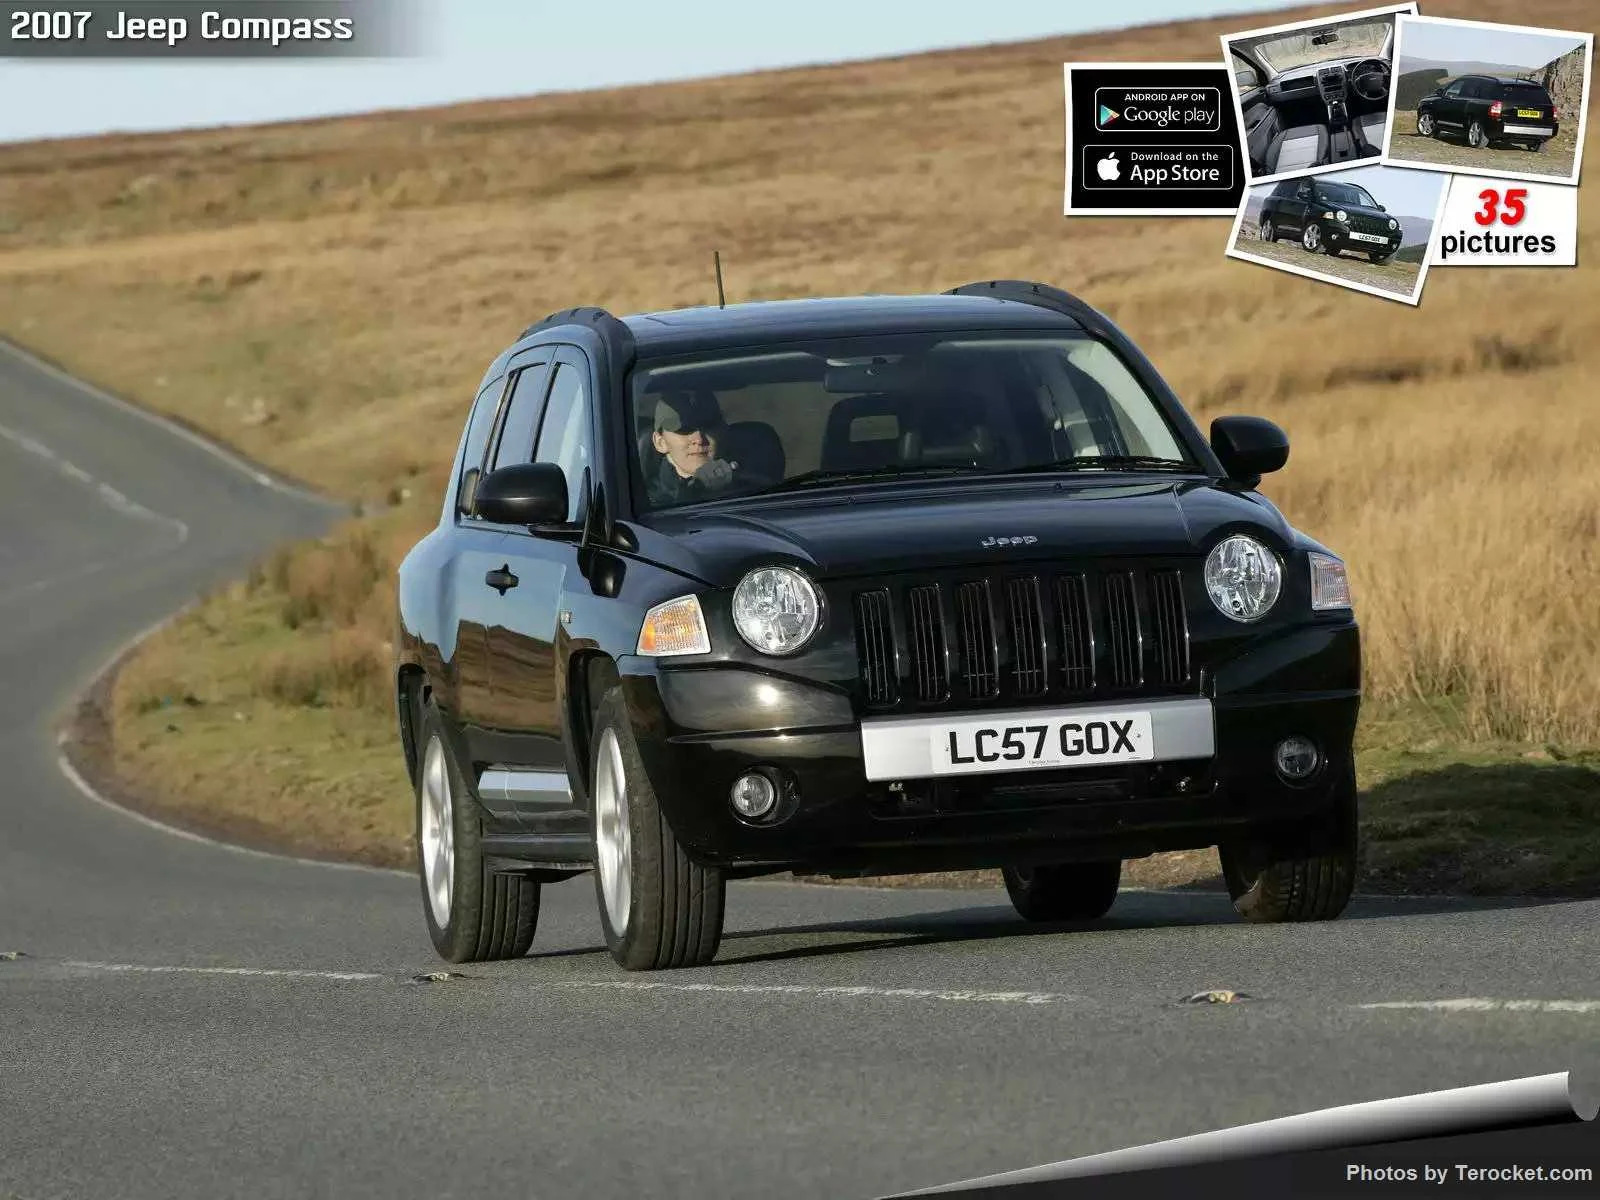 Hình ảnh xe ô tô Jeep Compass UK Version 2007 & nội ngoại thất